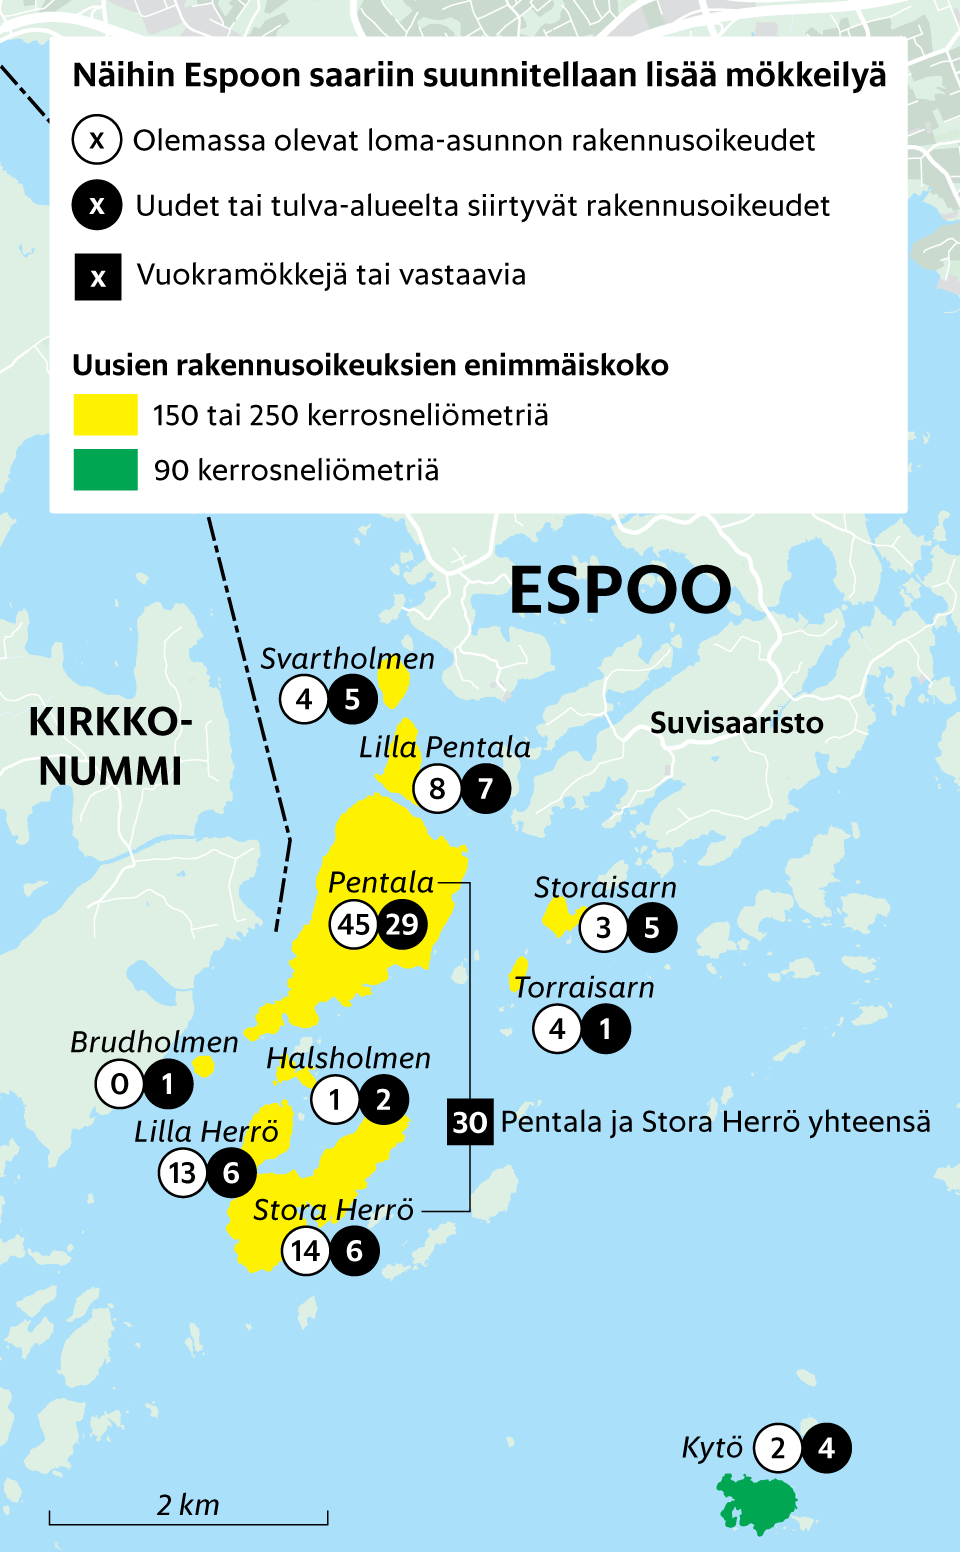 Helsingin rajalla piilee salattu mökkisaari, jonne ulkopuolisilla ei ole  asiaa – pian haave espoolaisesta merenrantamökistä voi toteutua monille  muillekin - Kaupunki 